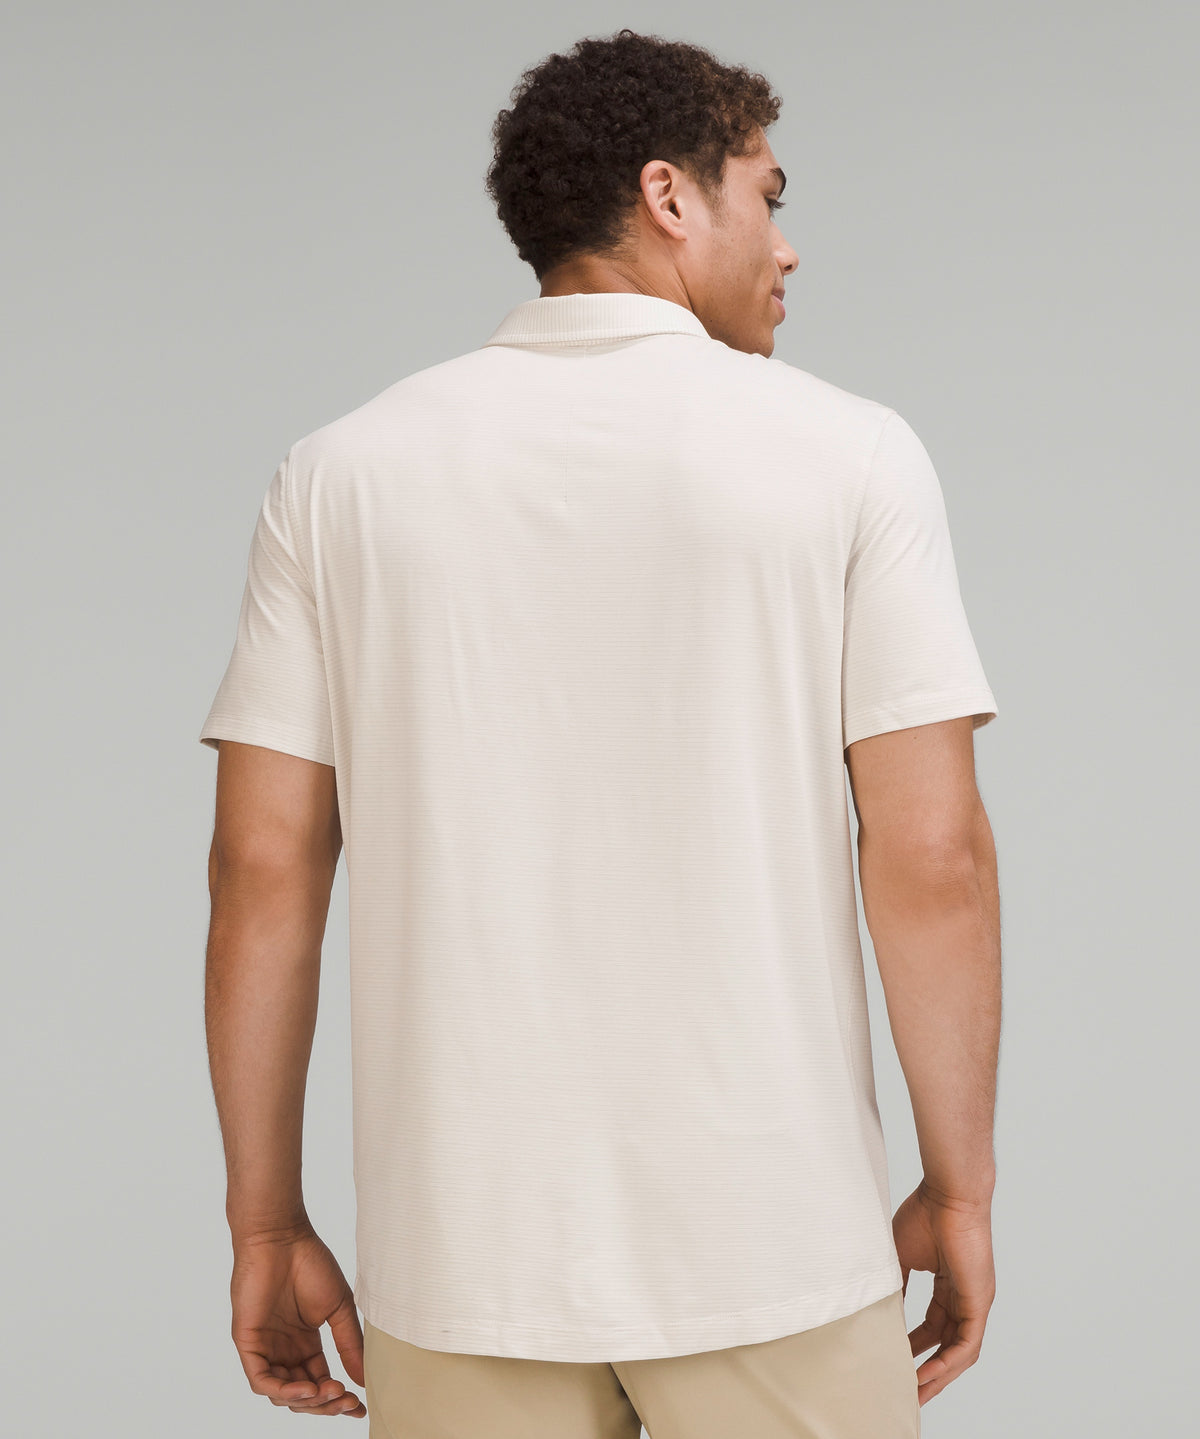 Lululemon and Evolution Long-Sleeve Polo Shirt